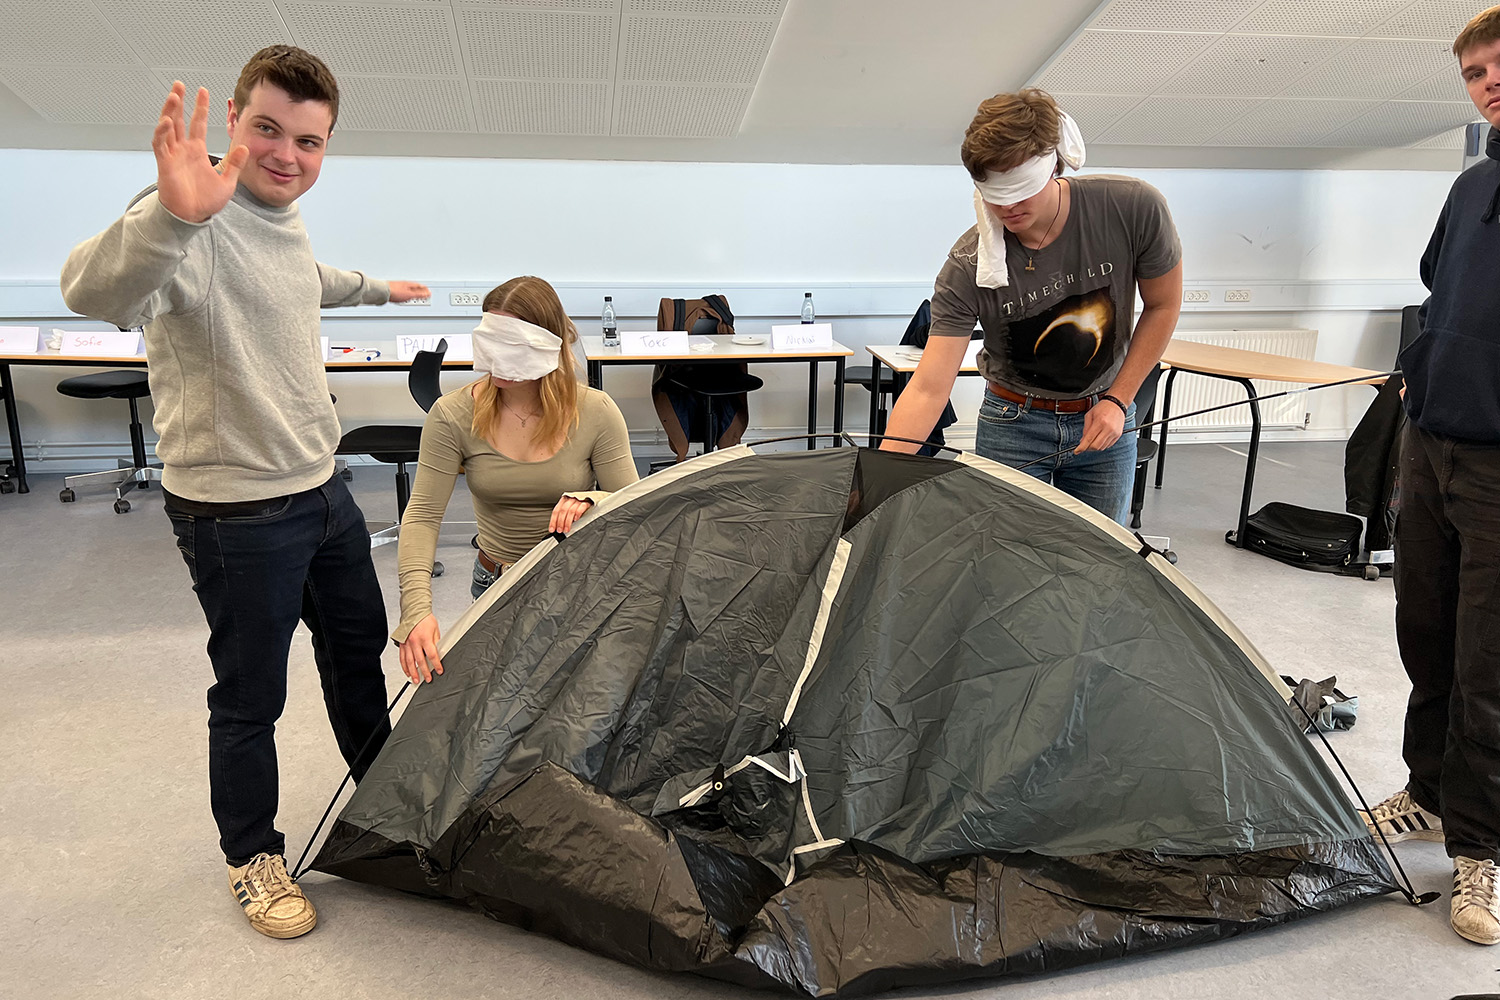 Saml et telt med bind for øjnene og guidning fra dine holdkammerater